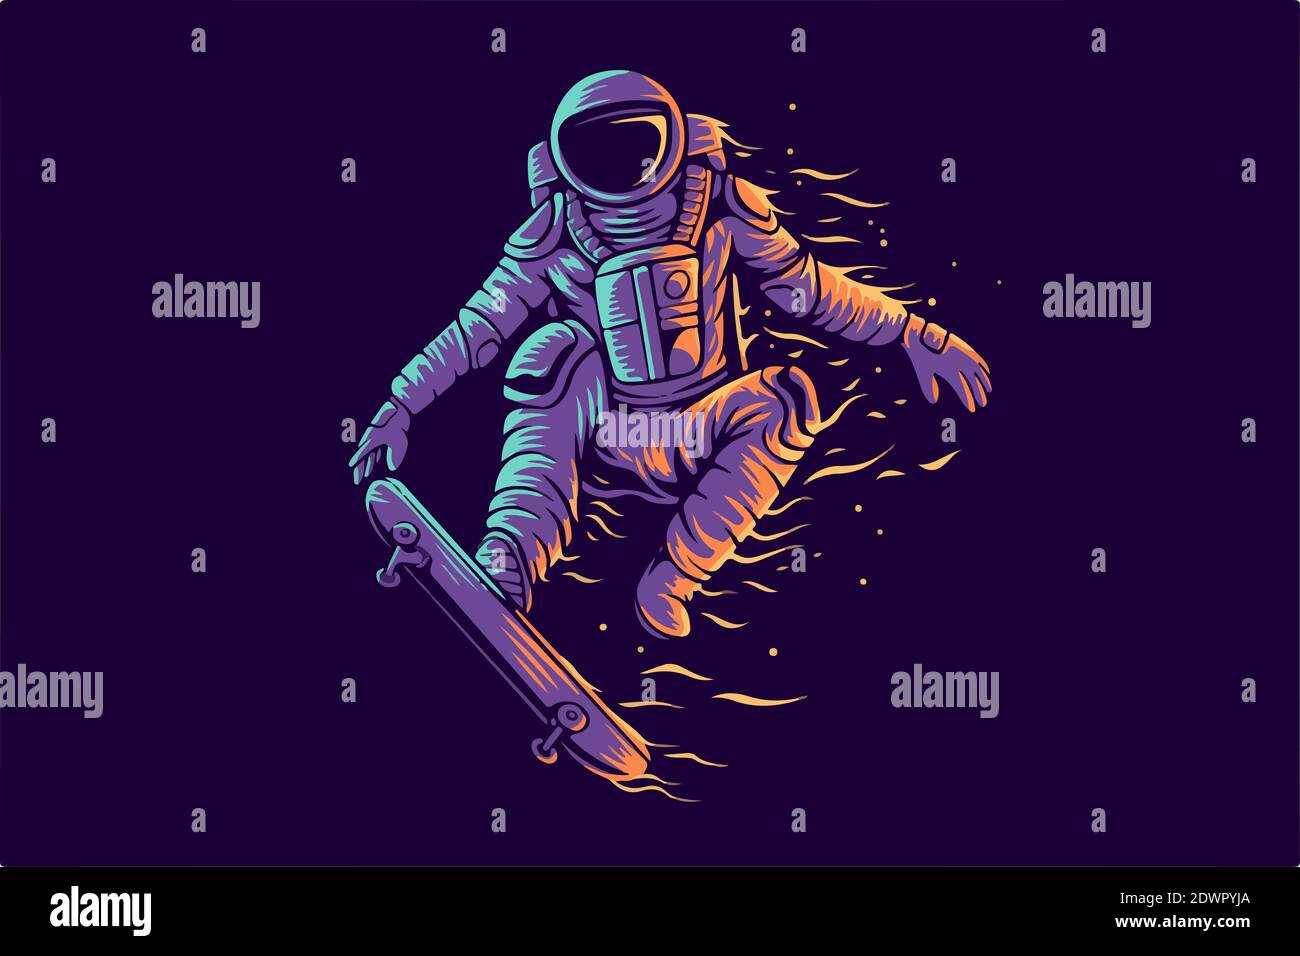 Illustrazione di uno skateboard astronauta nello spazio su sfondo viola Foto Stock